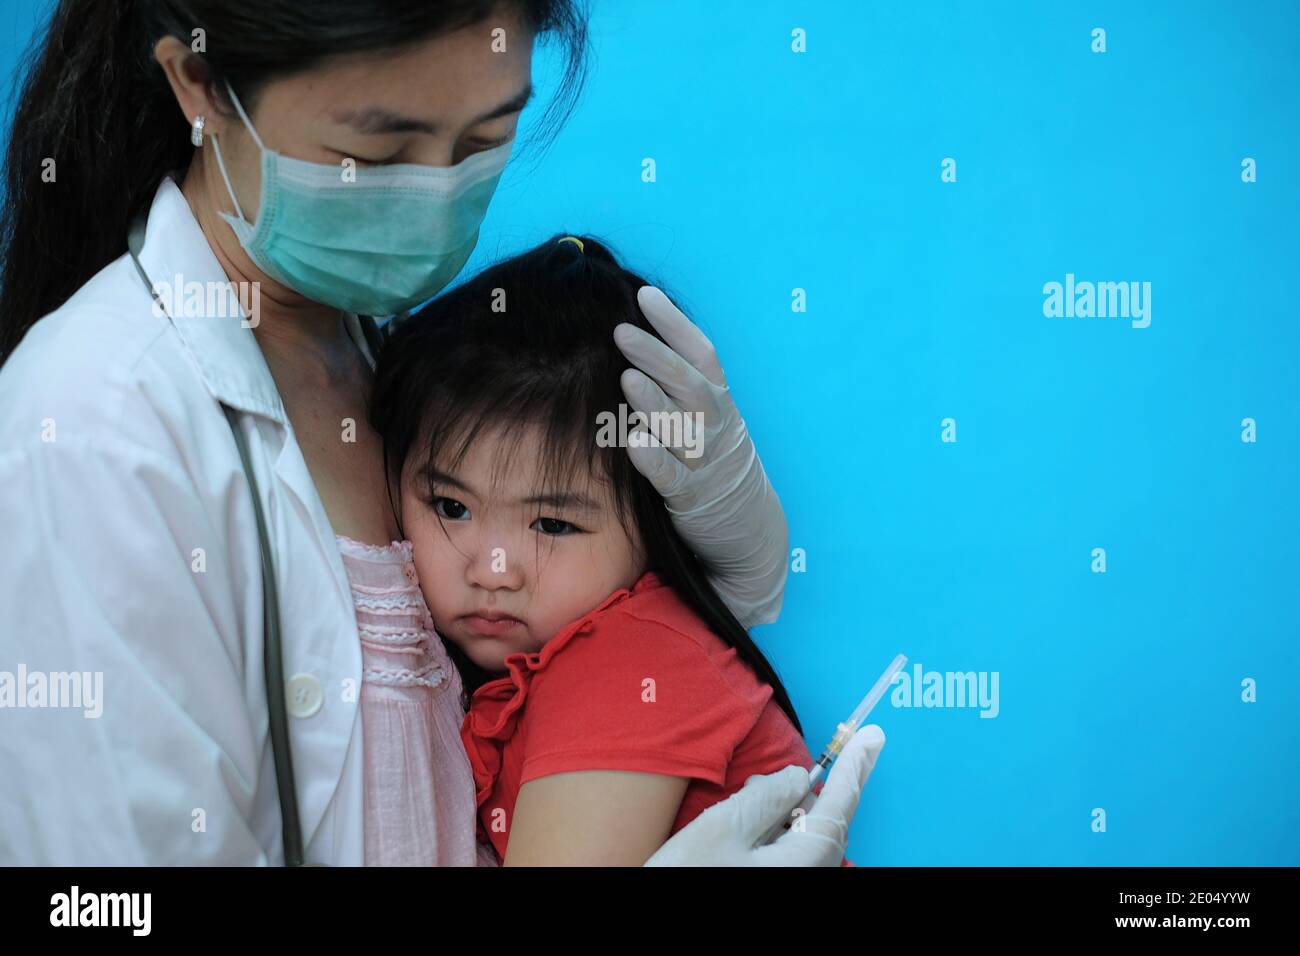 Une jolie jeune fille asiatique se sentant effrayée et nerveuse avant se faire vacciner est réconforté par son médecin qui l'est port d'un masque chirurgical avec un coup Banque D'Images